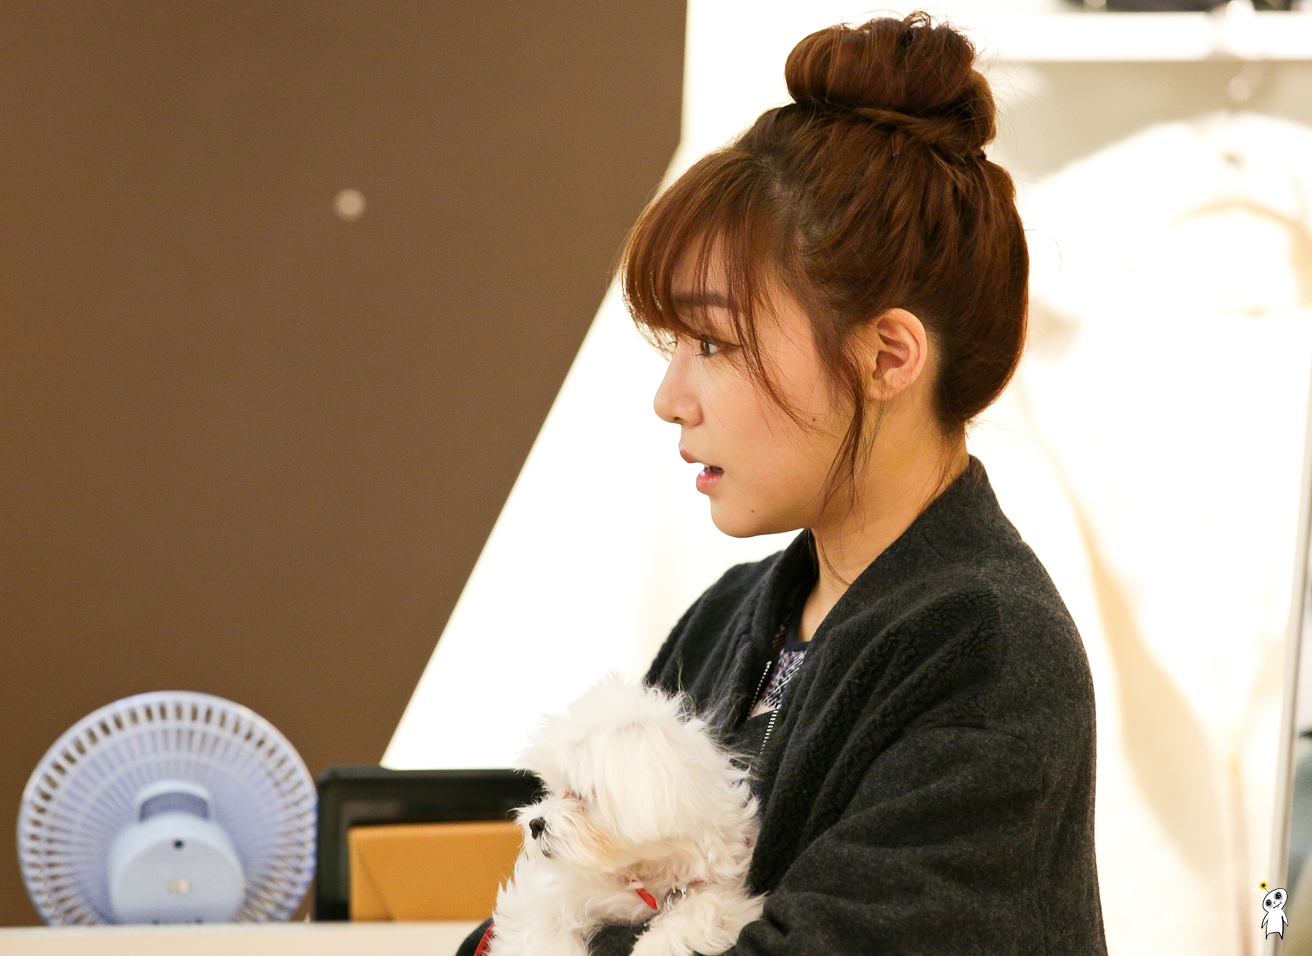 [PIC][28-11-2013]Tiffany ghé thăm cửa hàng "QUA" ở Hyundai Department Store vào trưa nay - Page 3 2567294052980CB62726F4